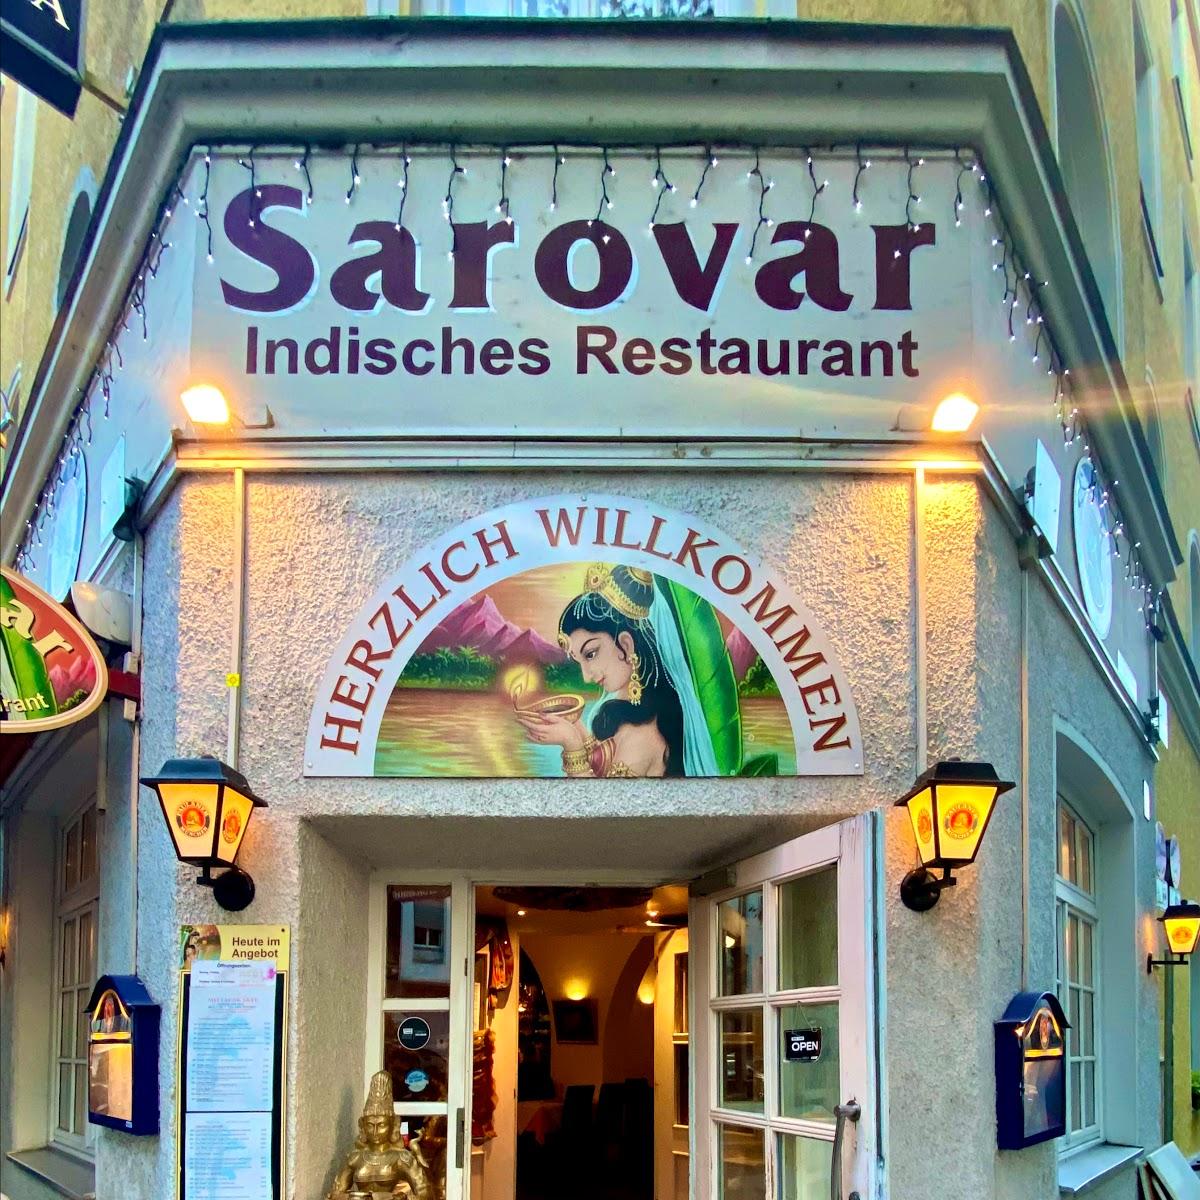 Restaurant "Sarovar - Indisches Restaurant" in München